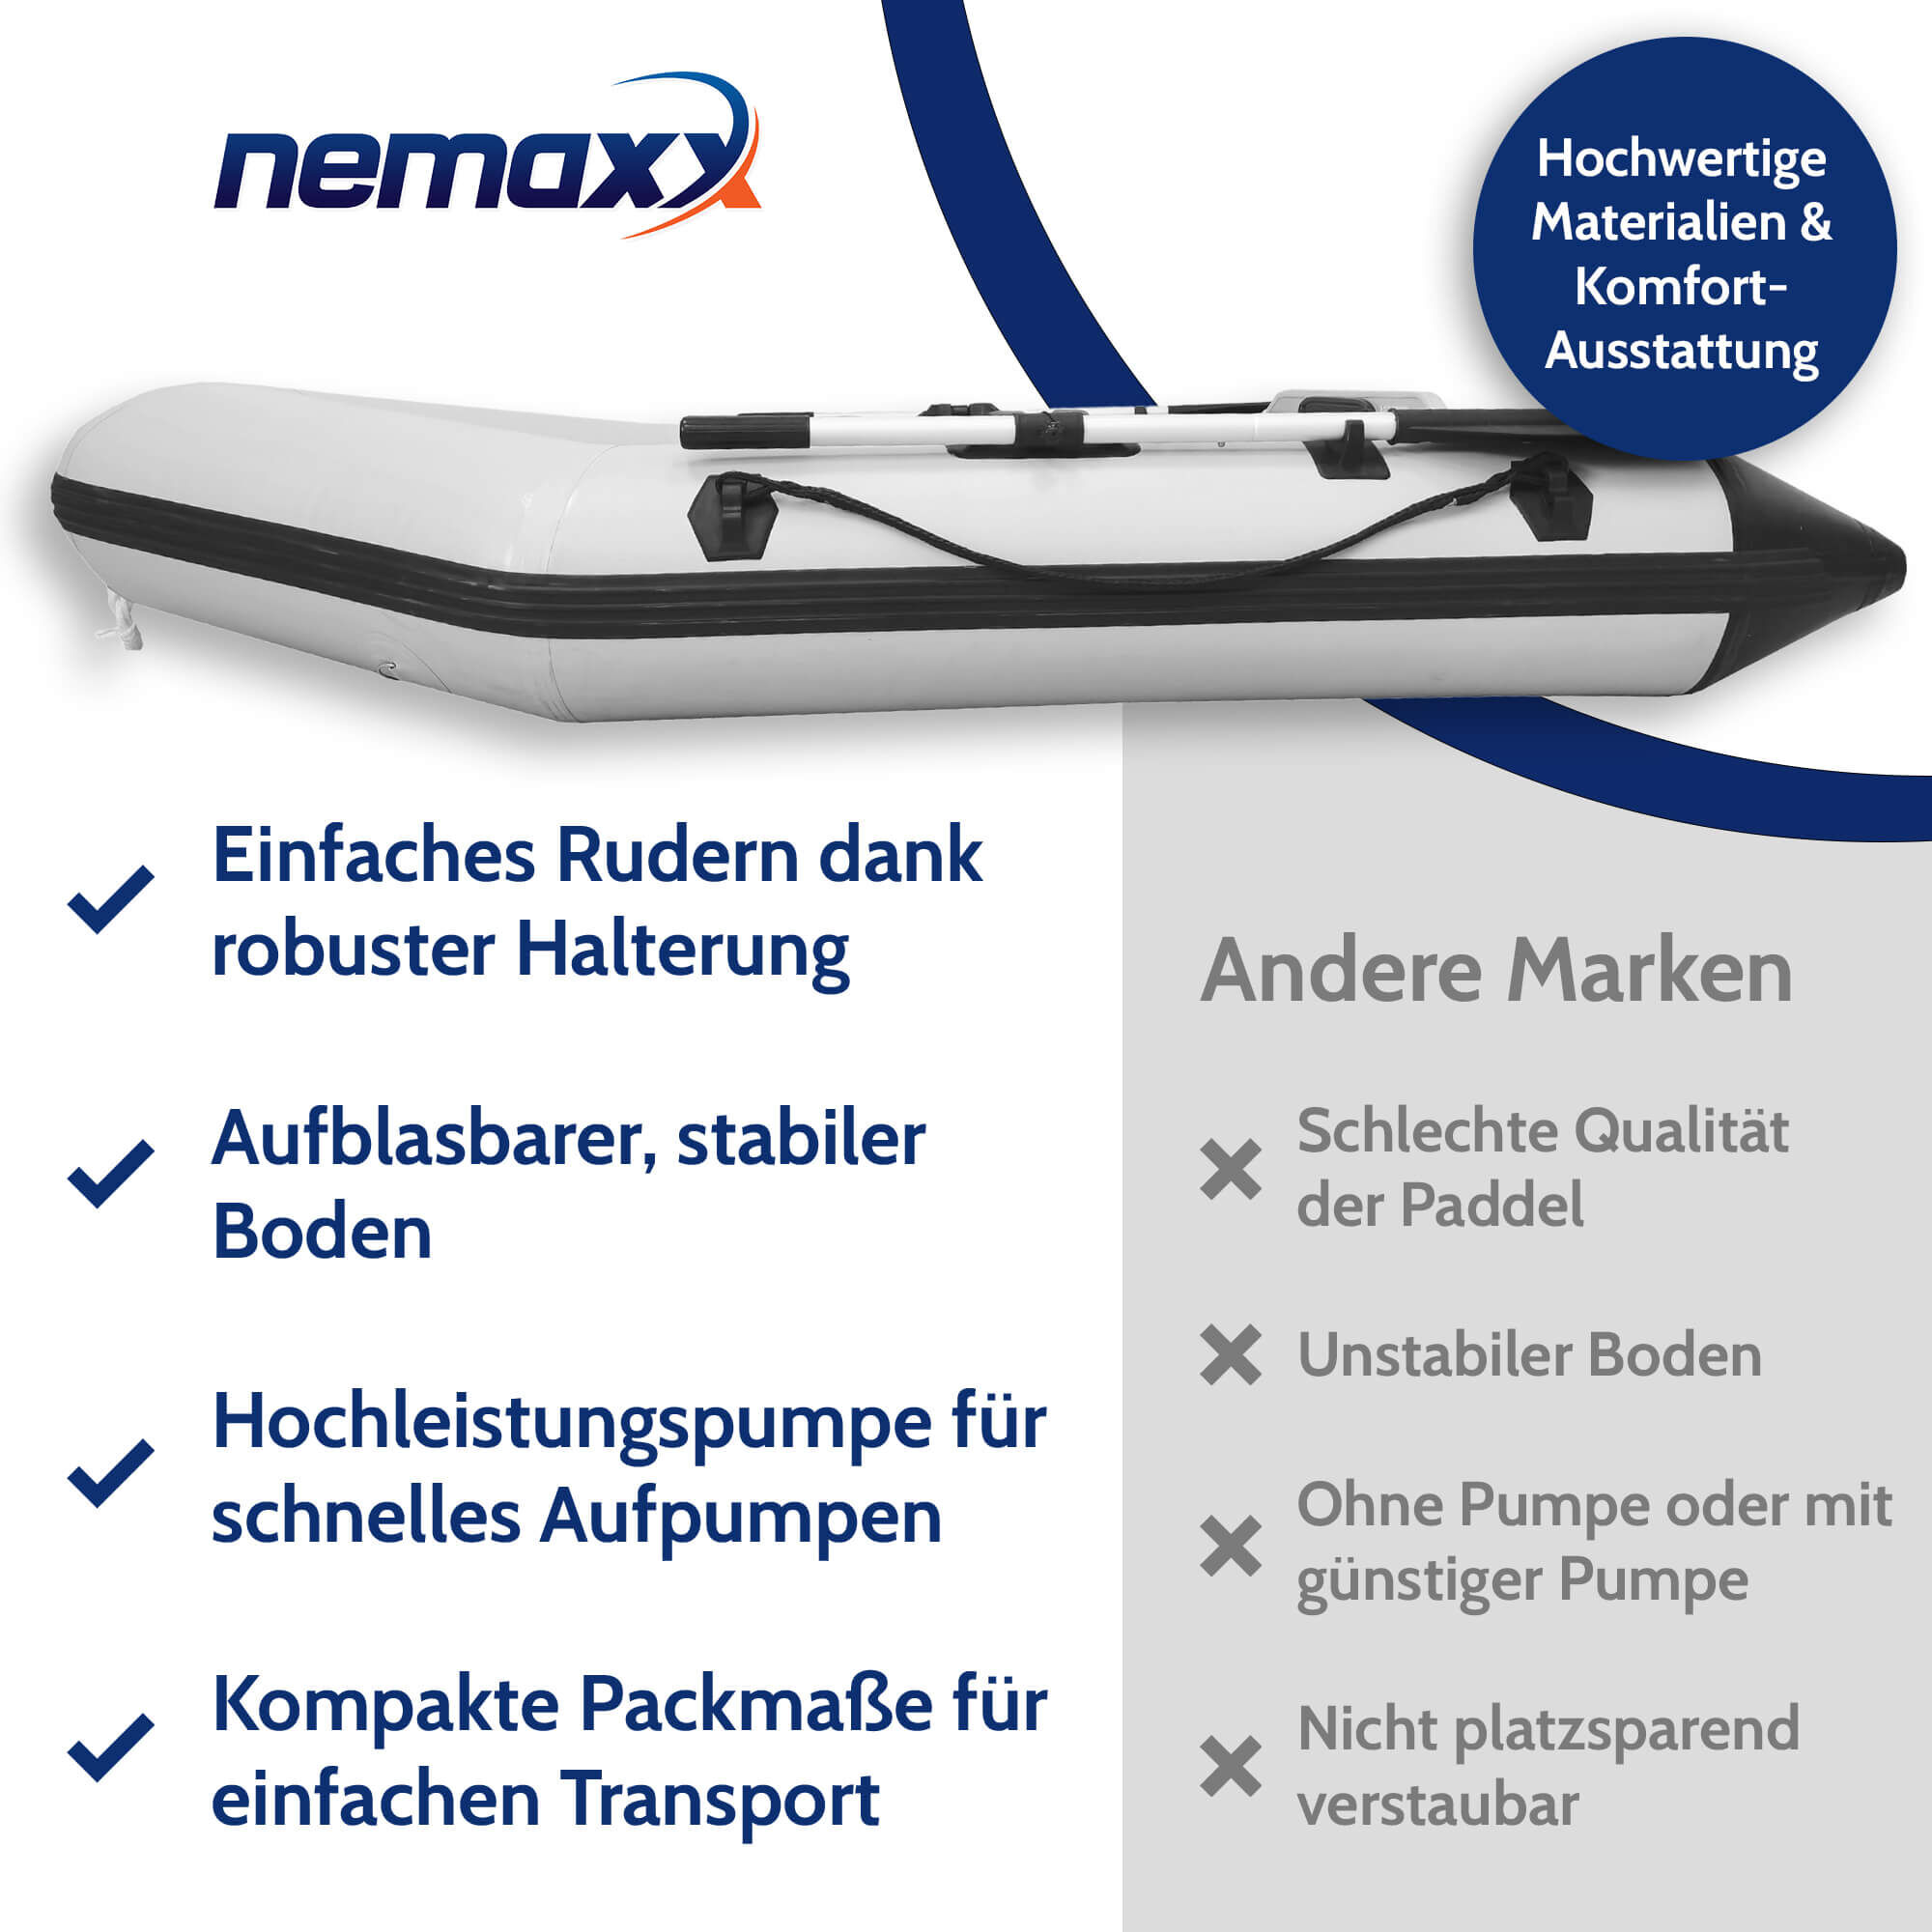 Nemaxx Professional Schlauchboot 230 cm mit Luftboden